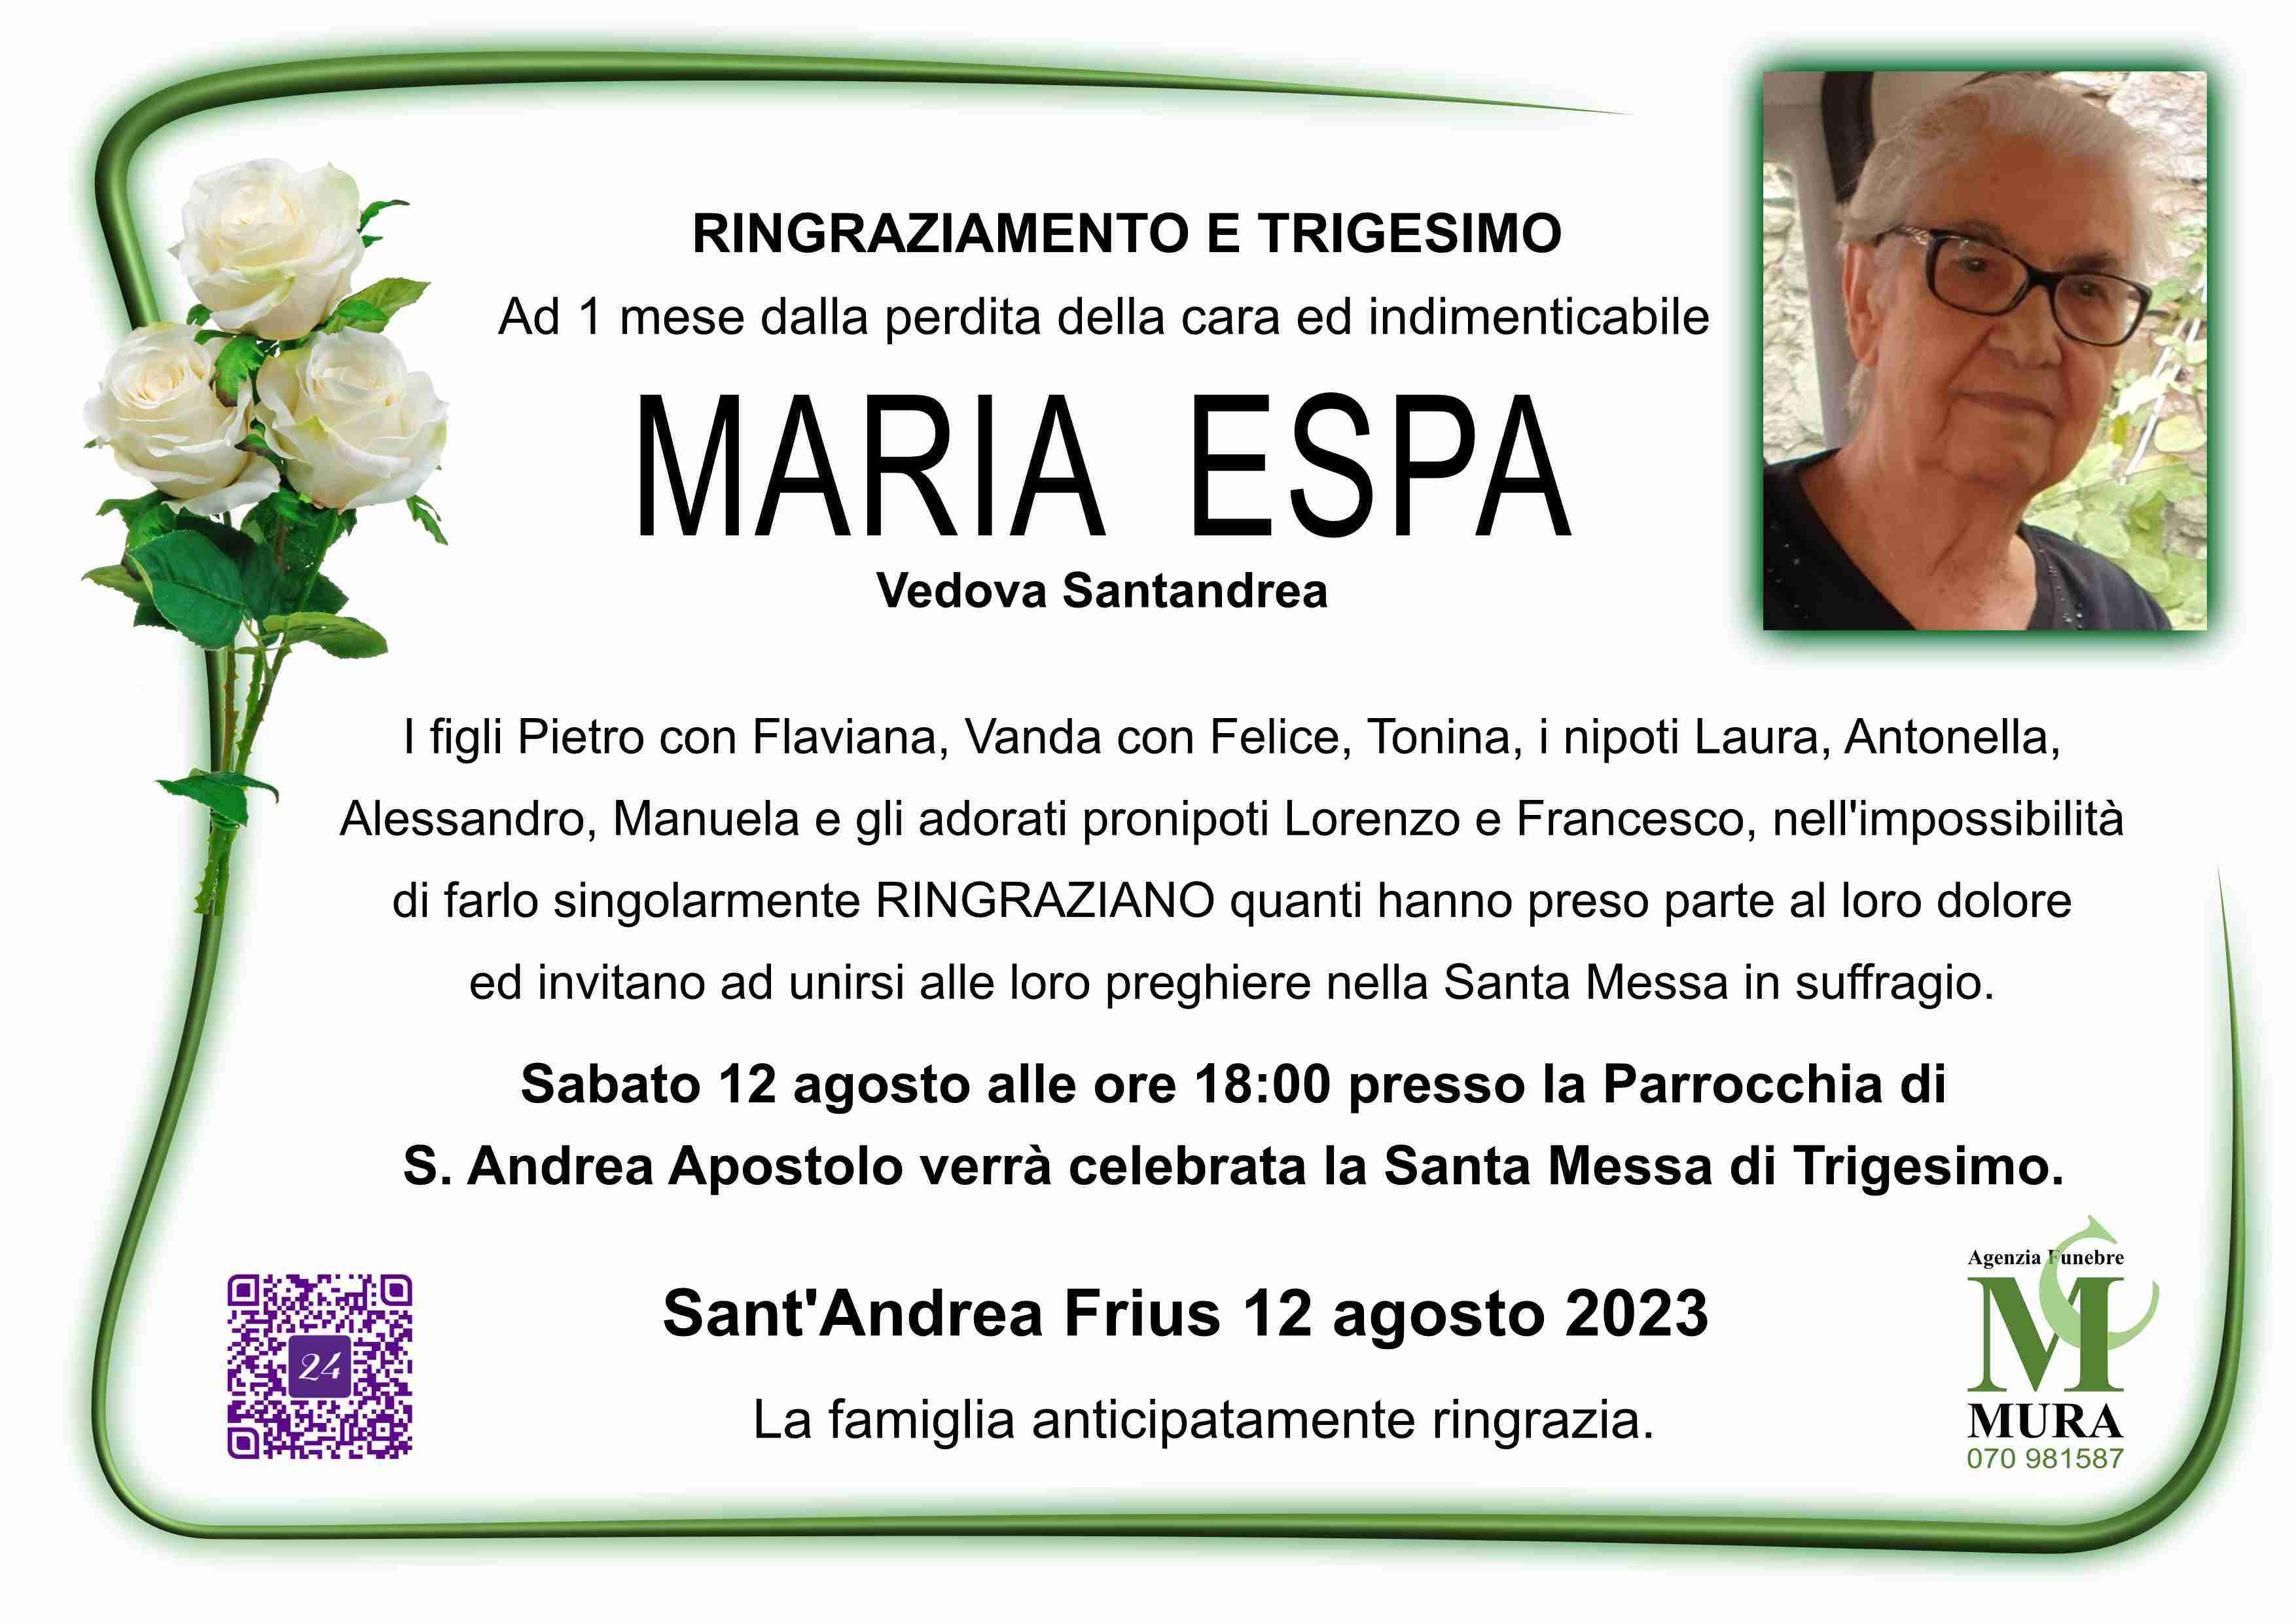 Maria Espa